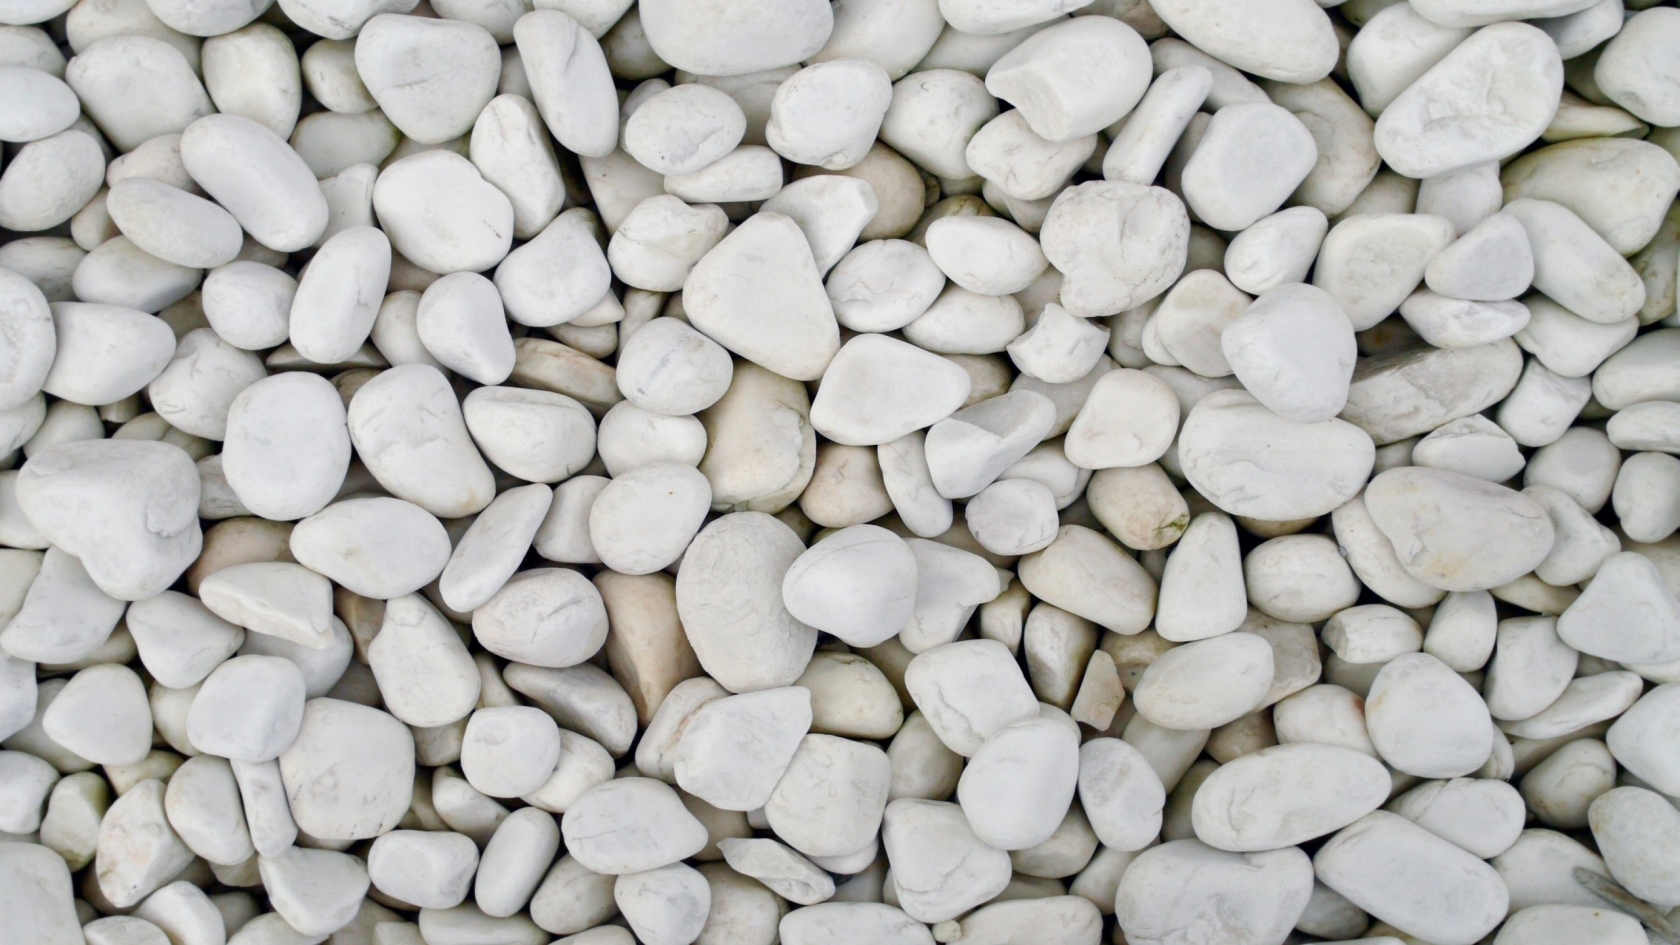 White Pebbles for 1680 x 945 HDTV resolution